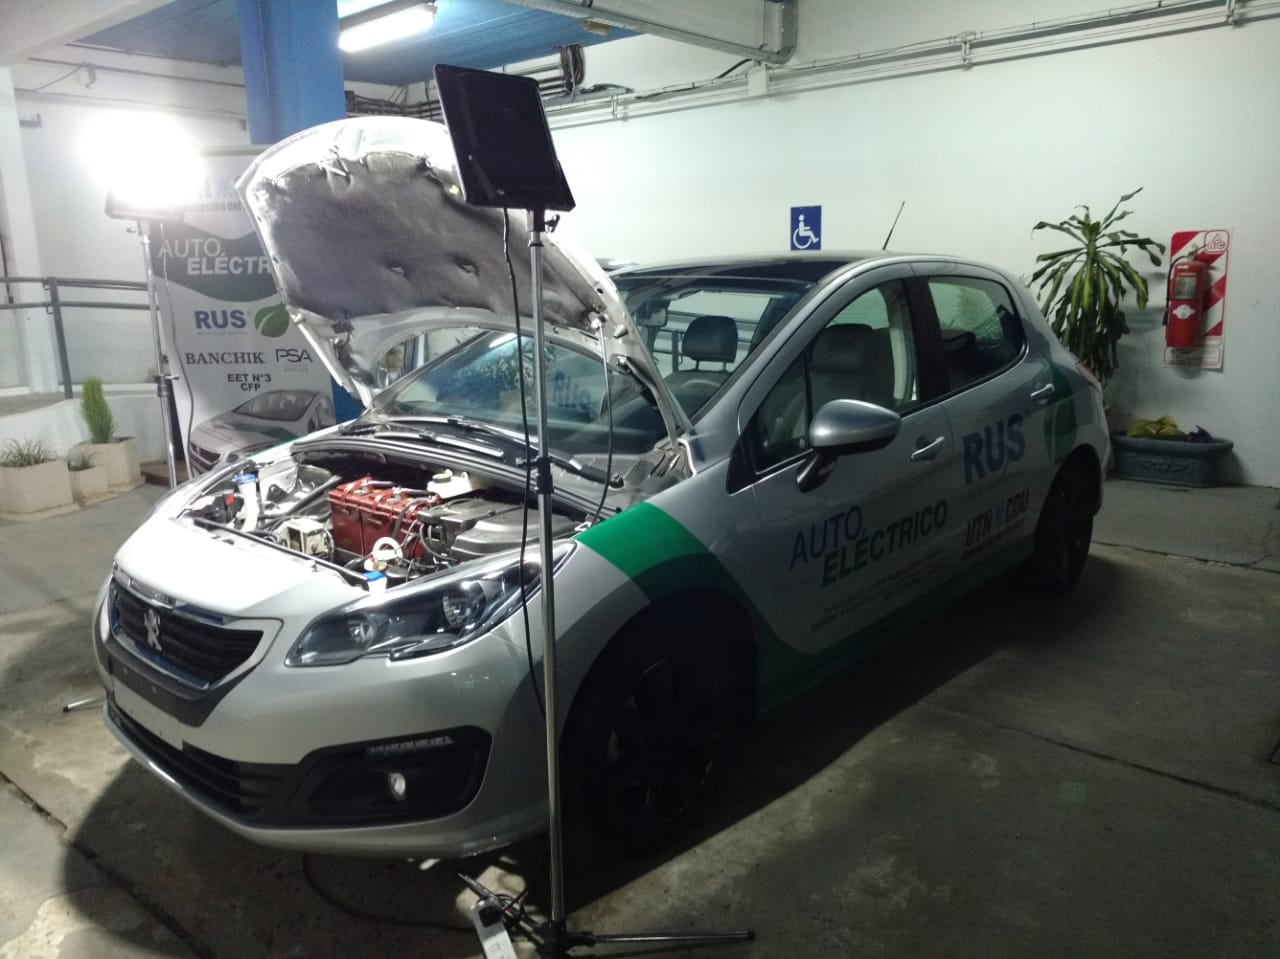 El auto eléctrico de UTN en el TC Mouras de Concepción del Uruguay